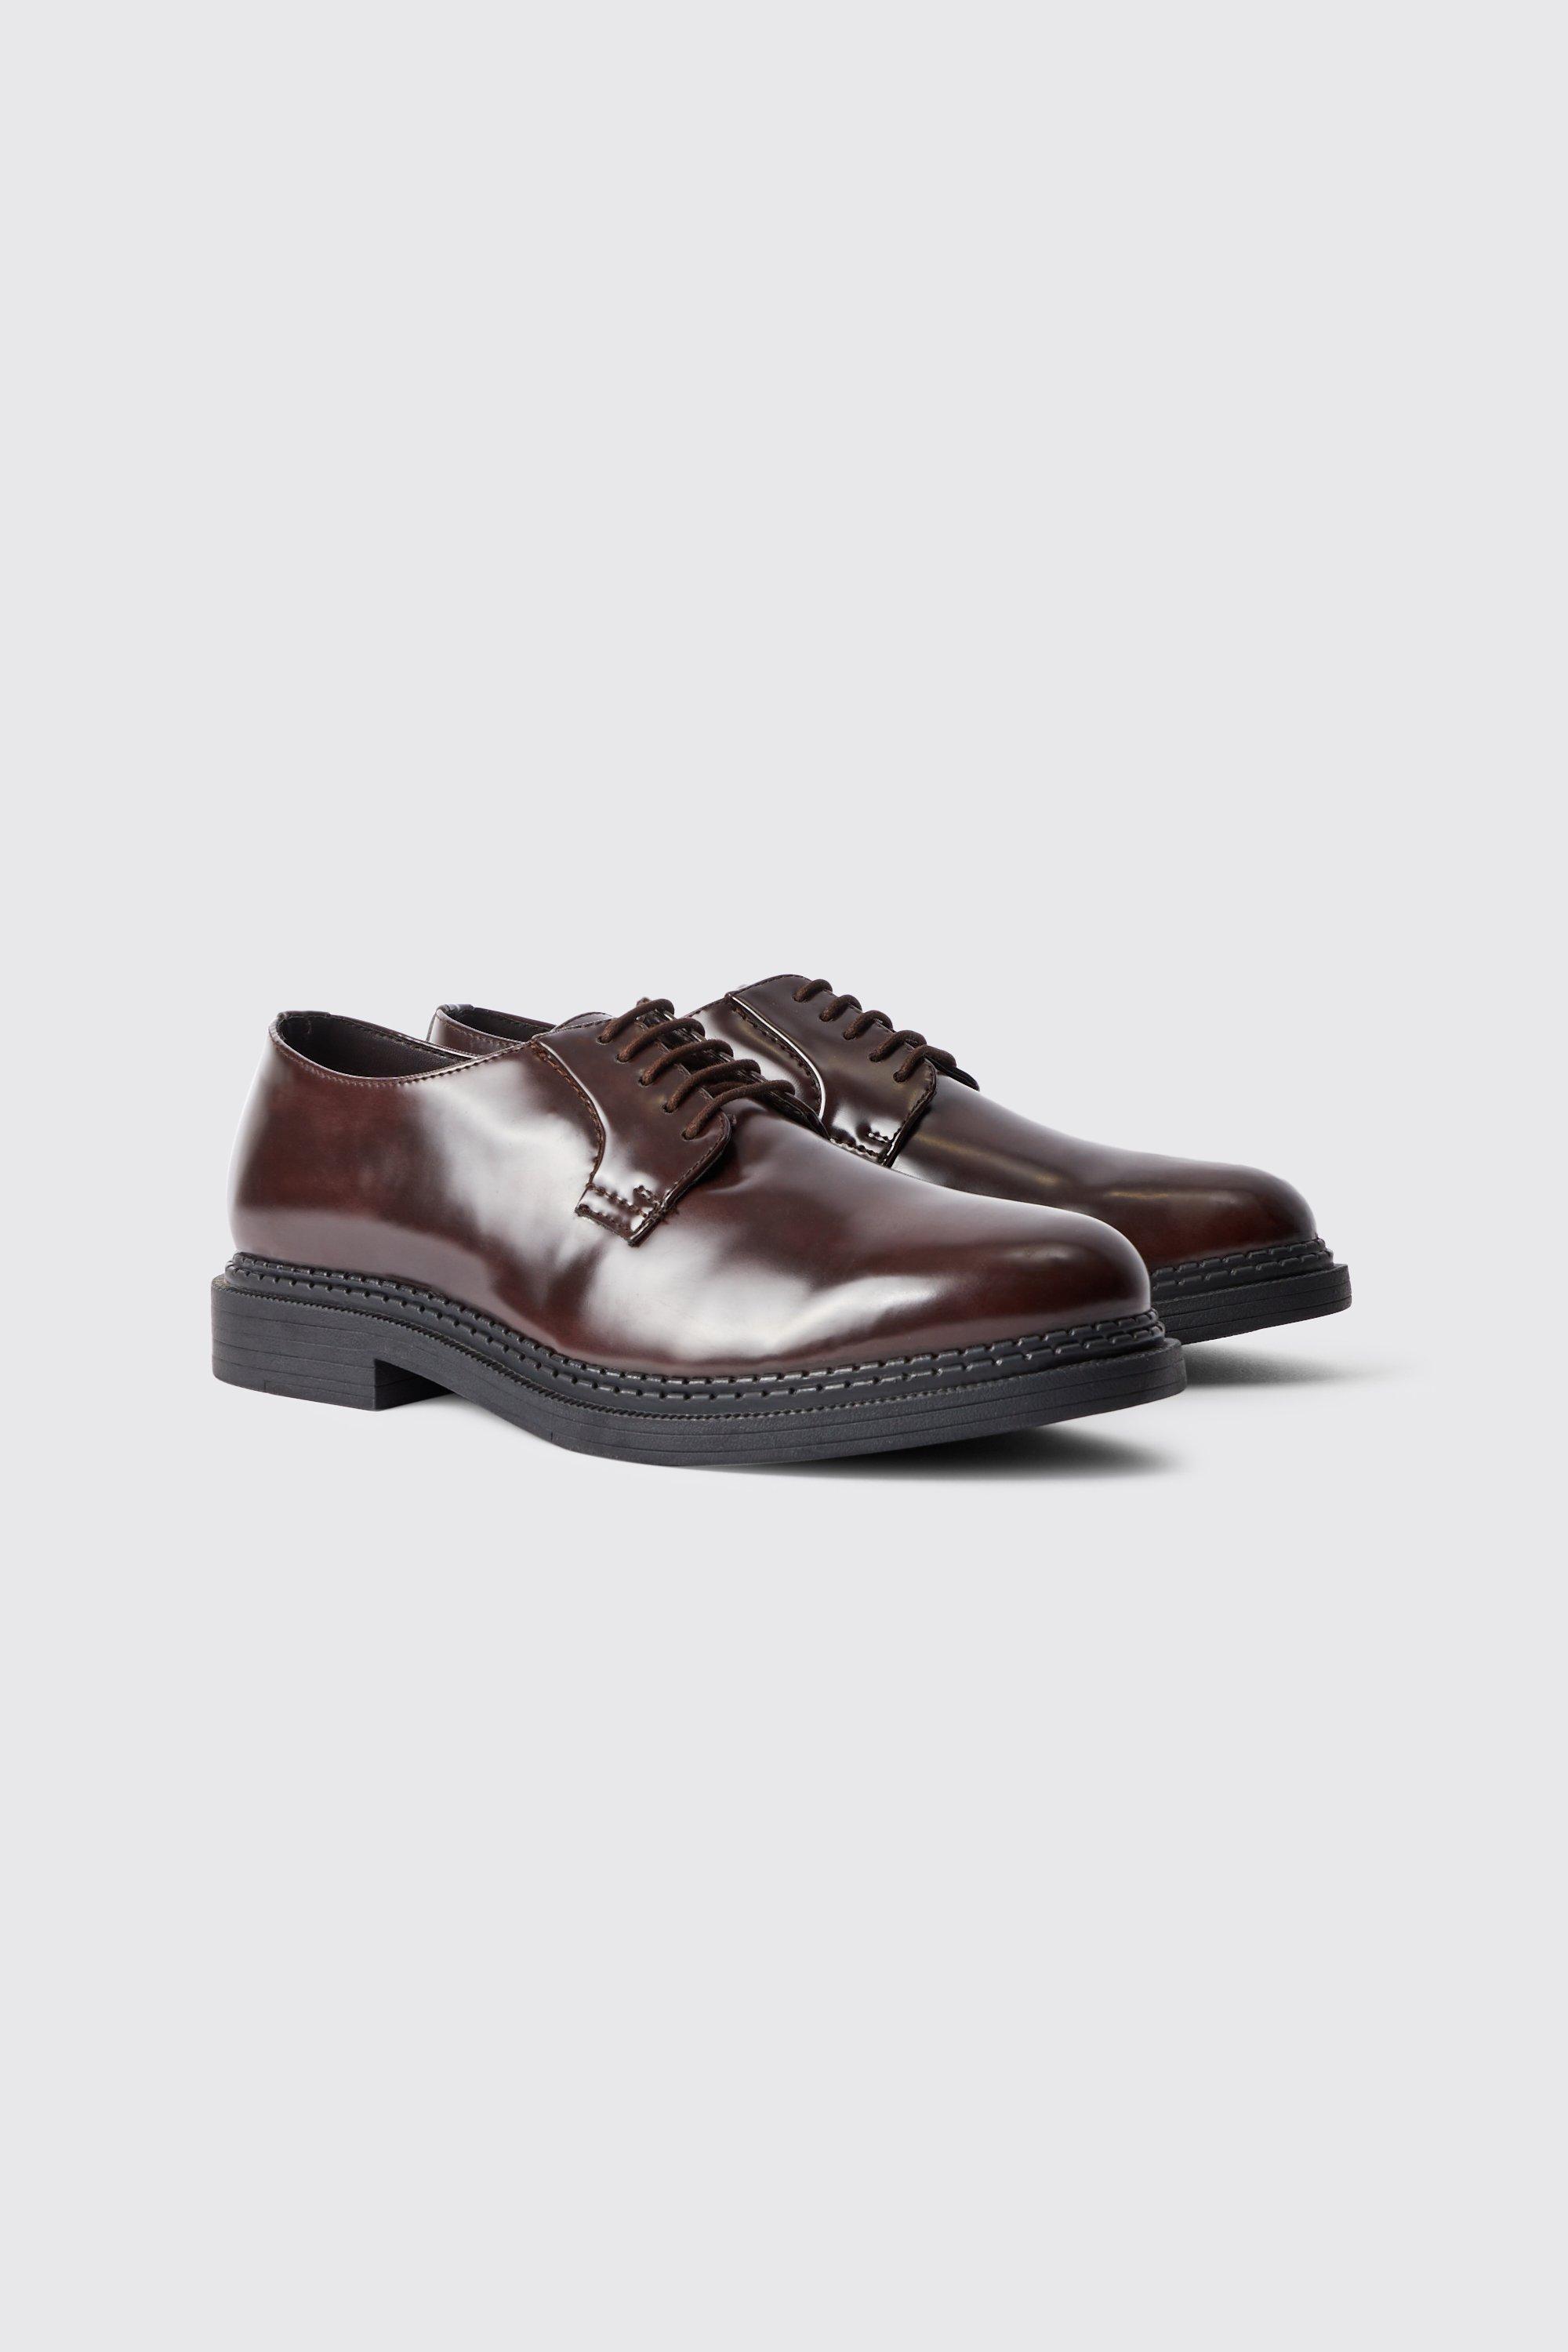 chaussures à lacets habillées homme - marron - 45, marron